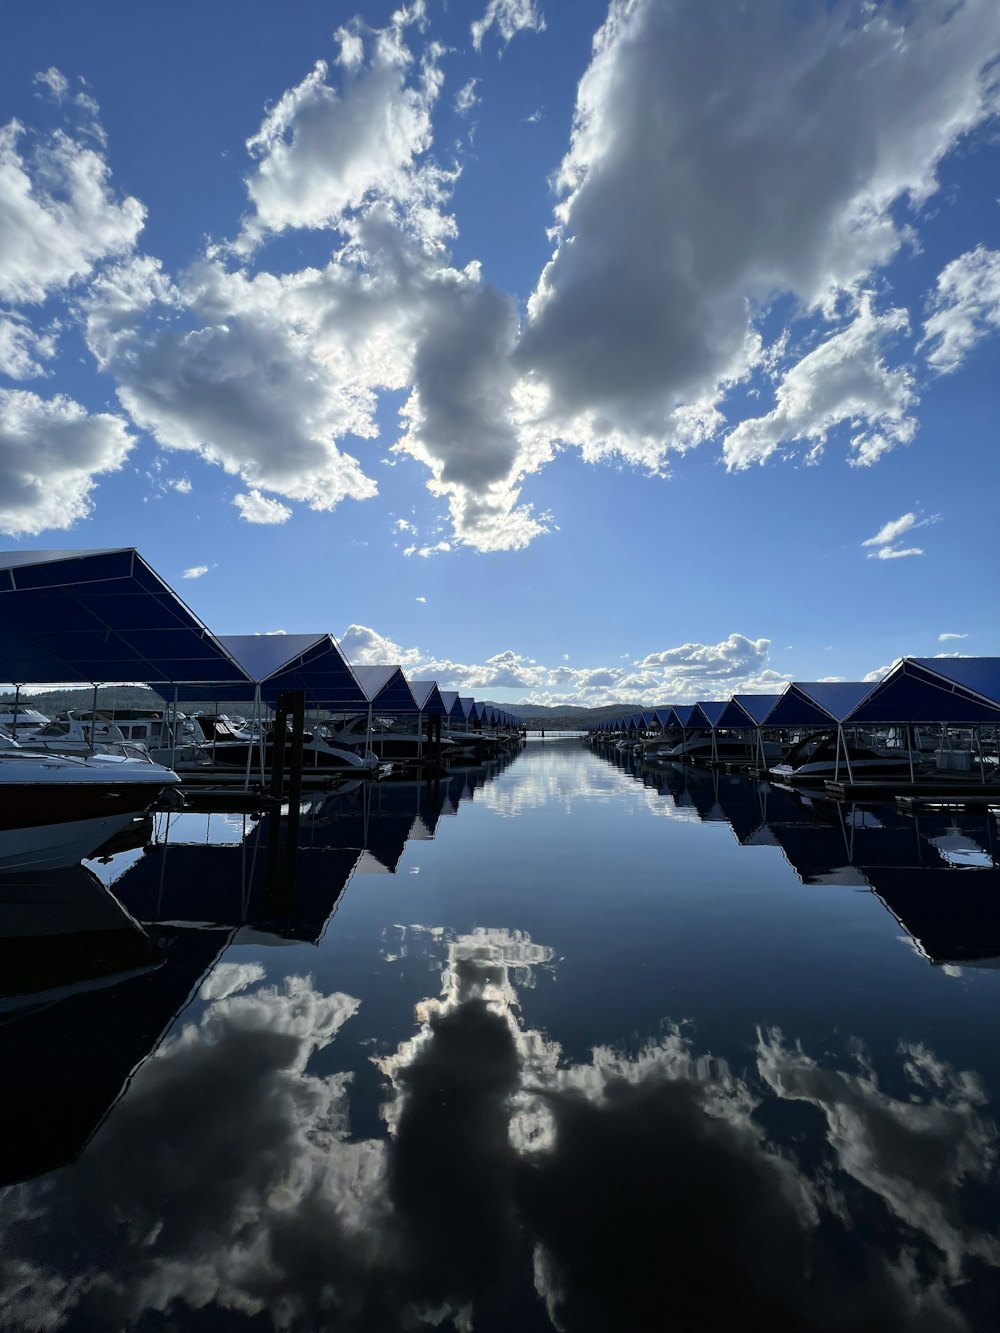 um corpo de água cercado por barcos sob um céu azul nublado